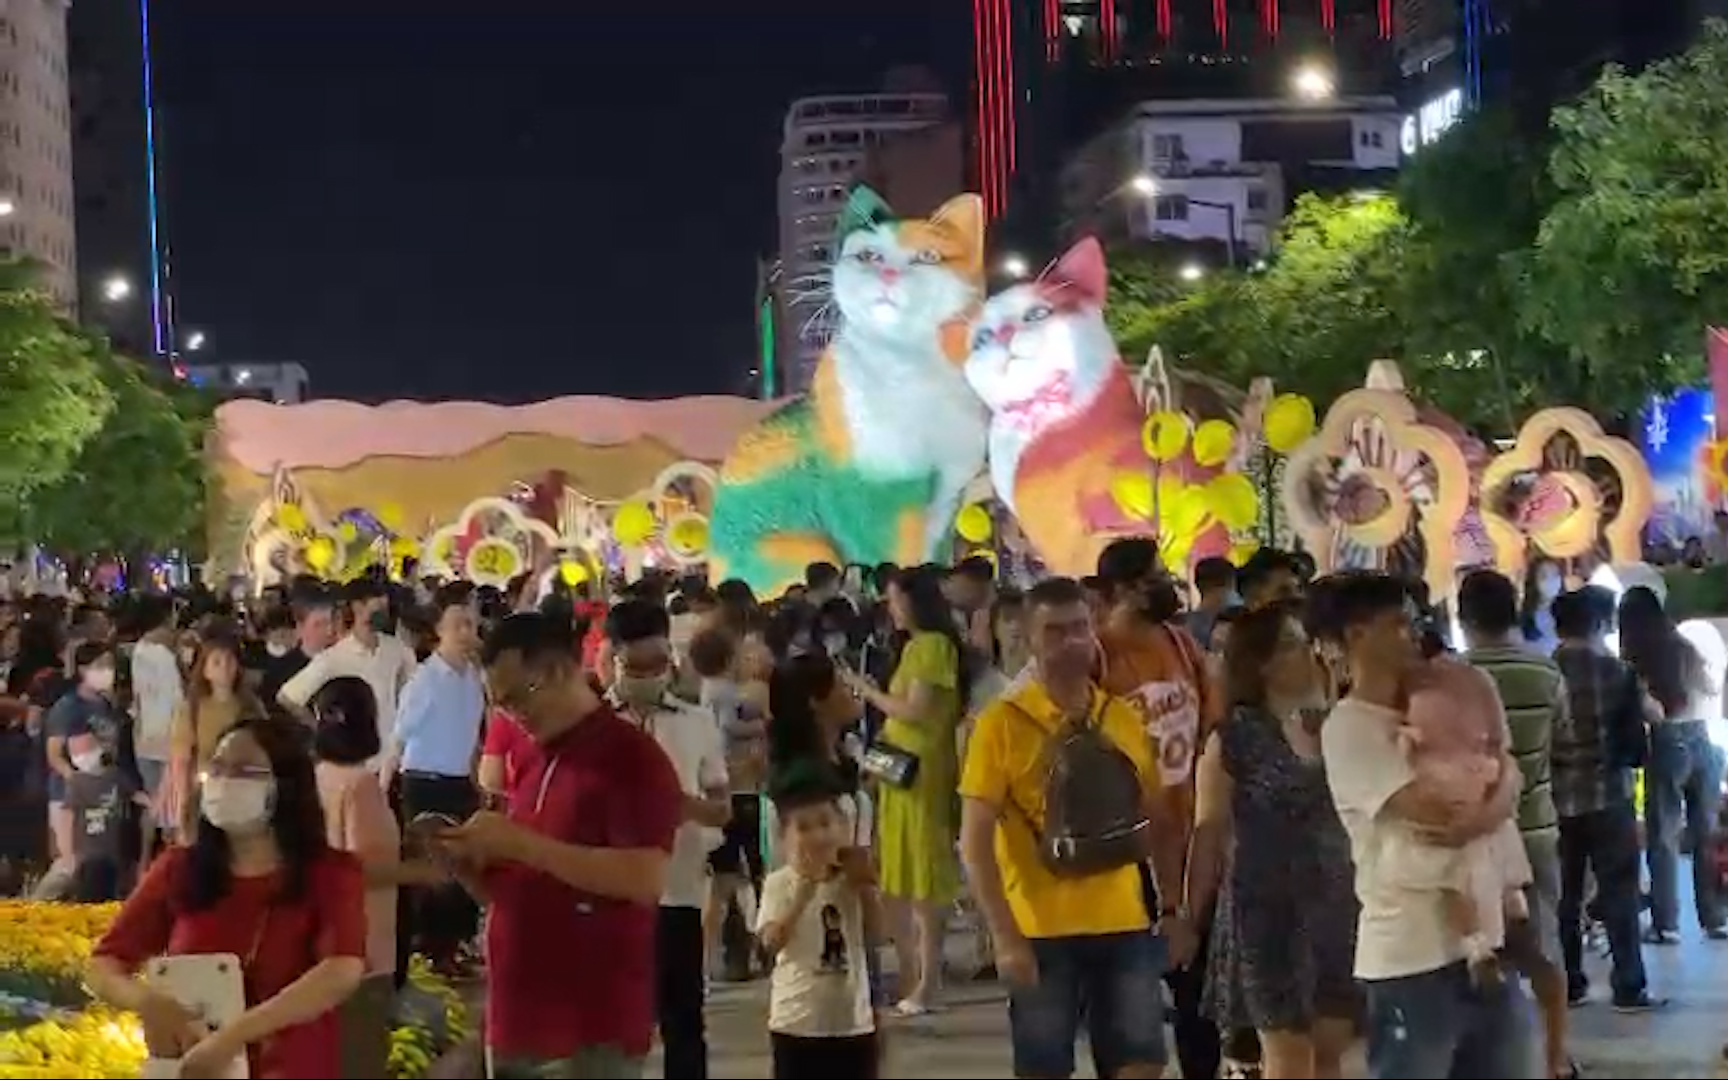 Hàng trăm người xếp hàng, chờ nhiều giờ để ngắm, chụp ảnh với linh vật mèo tại Đường hoa Nguyễn Huệ